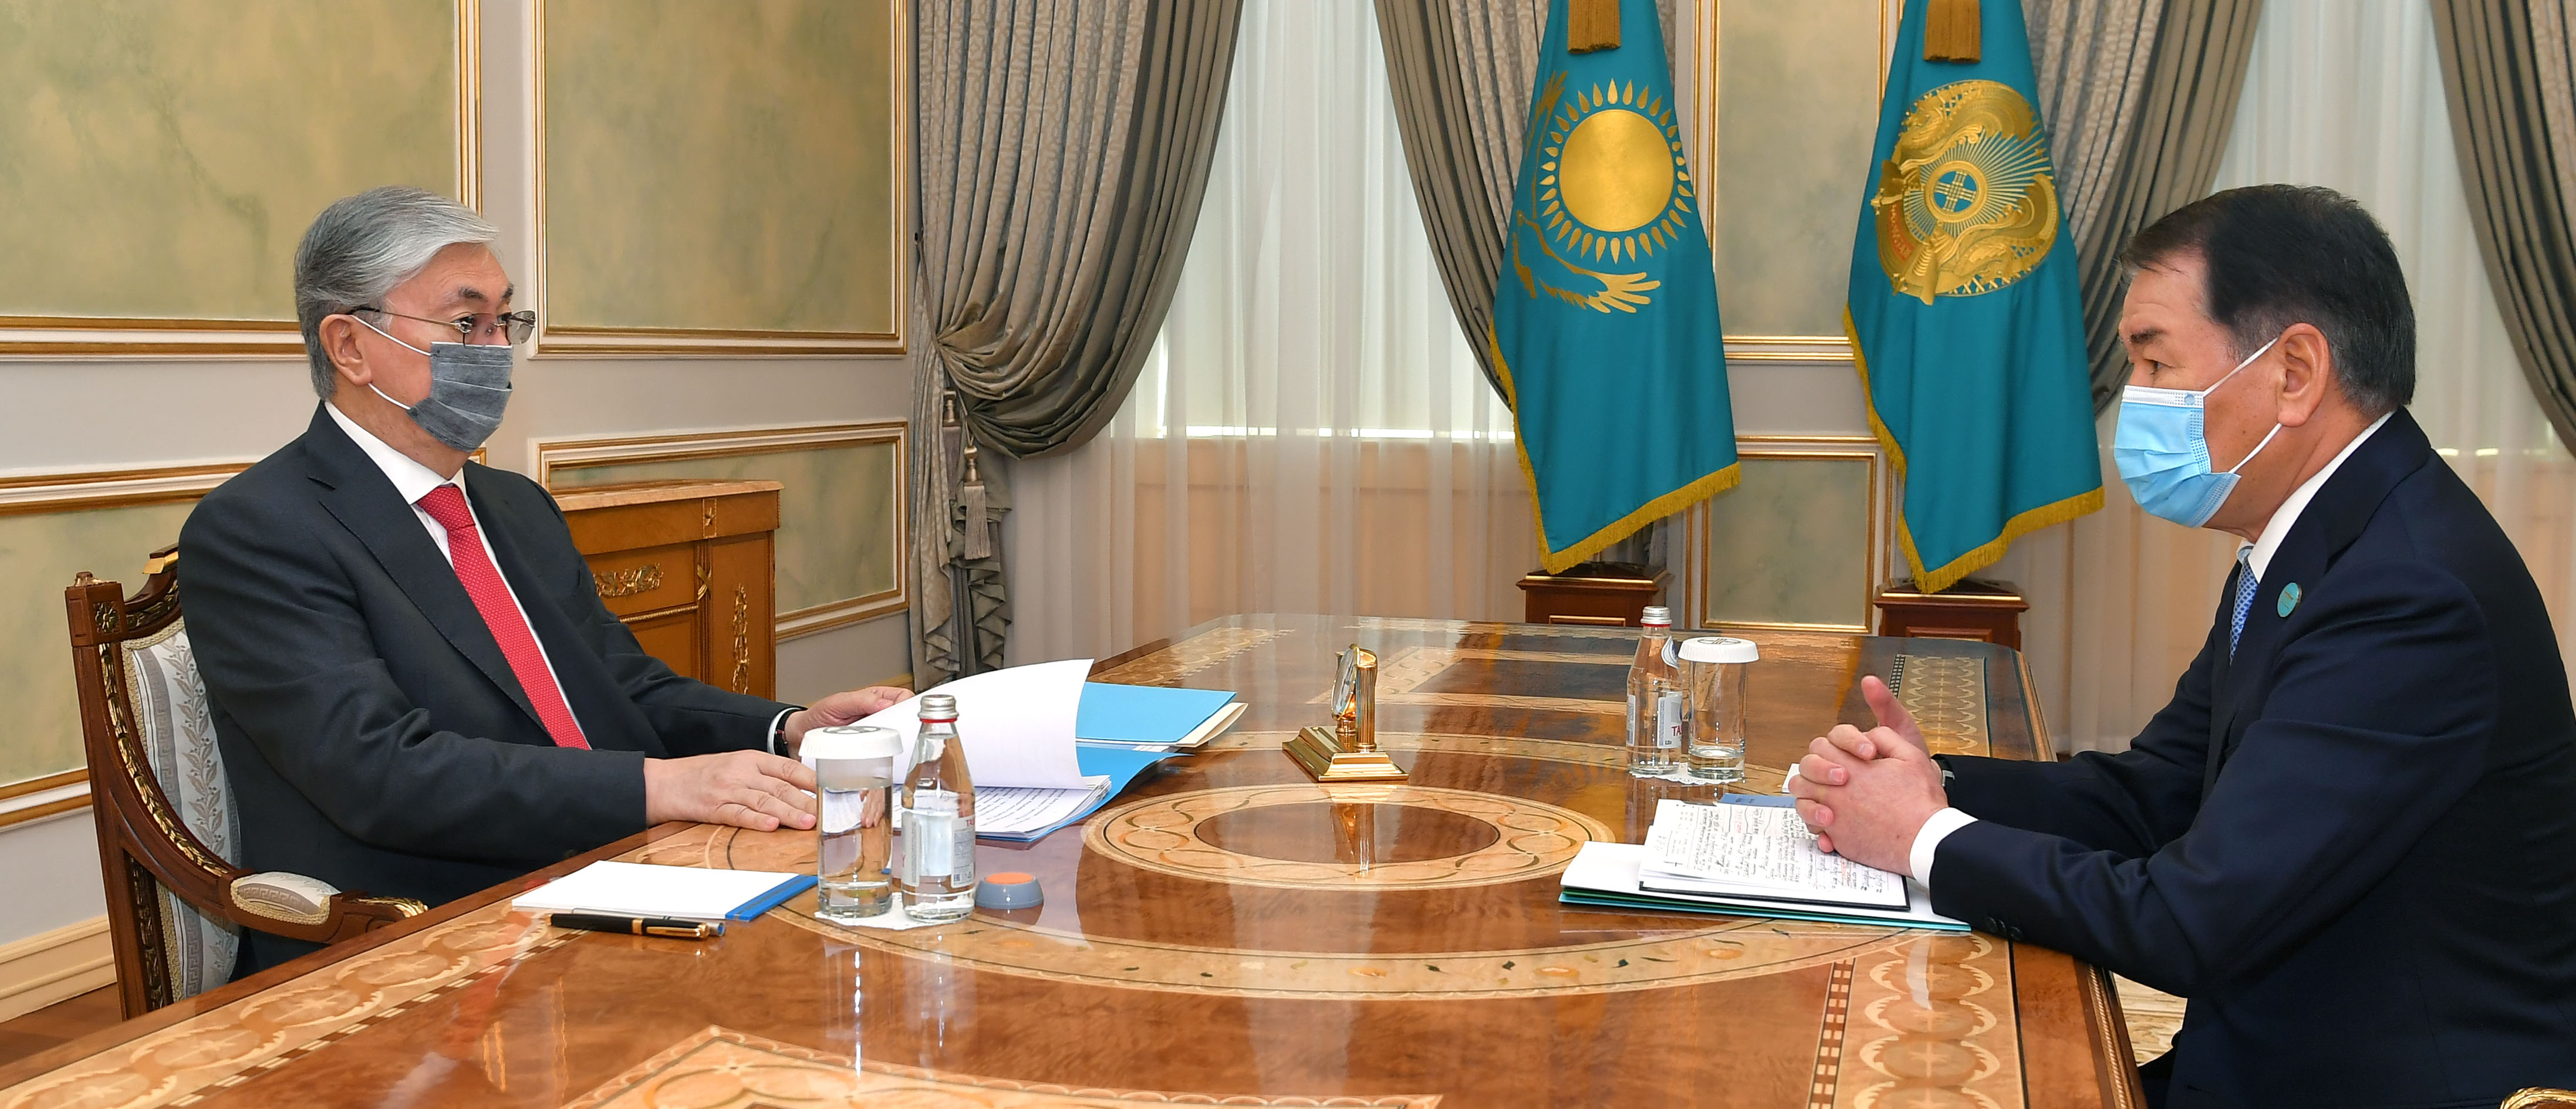 Касым-Жомарту Токаеву представили предложения, направленные на укрепление конституционной законности в РК 